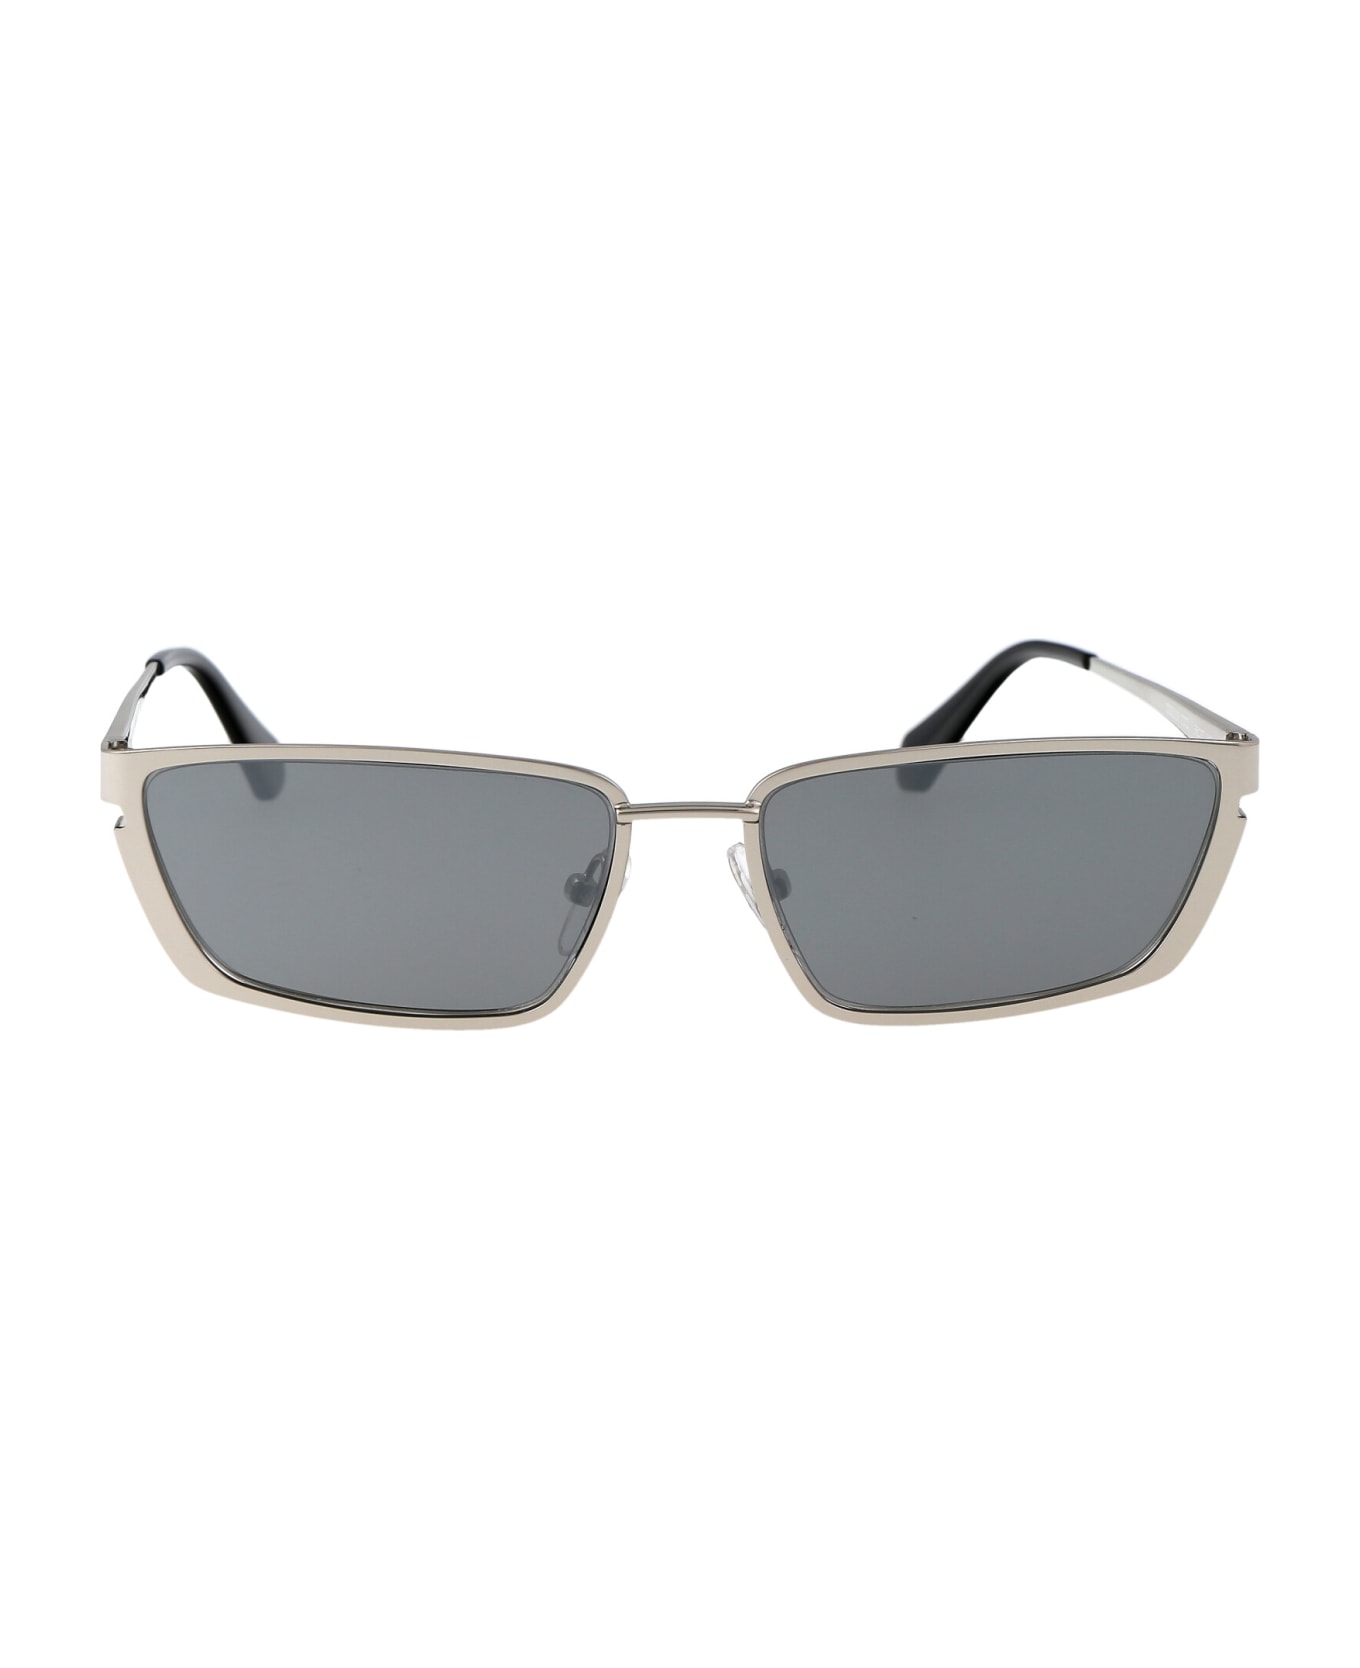 Off-White Richfield Sunglasses - 7272 SILVER SILVER